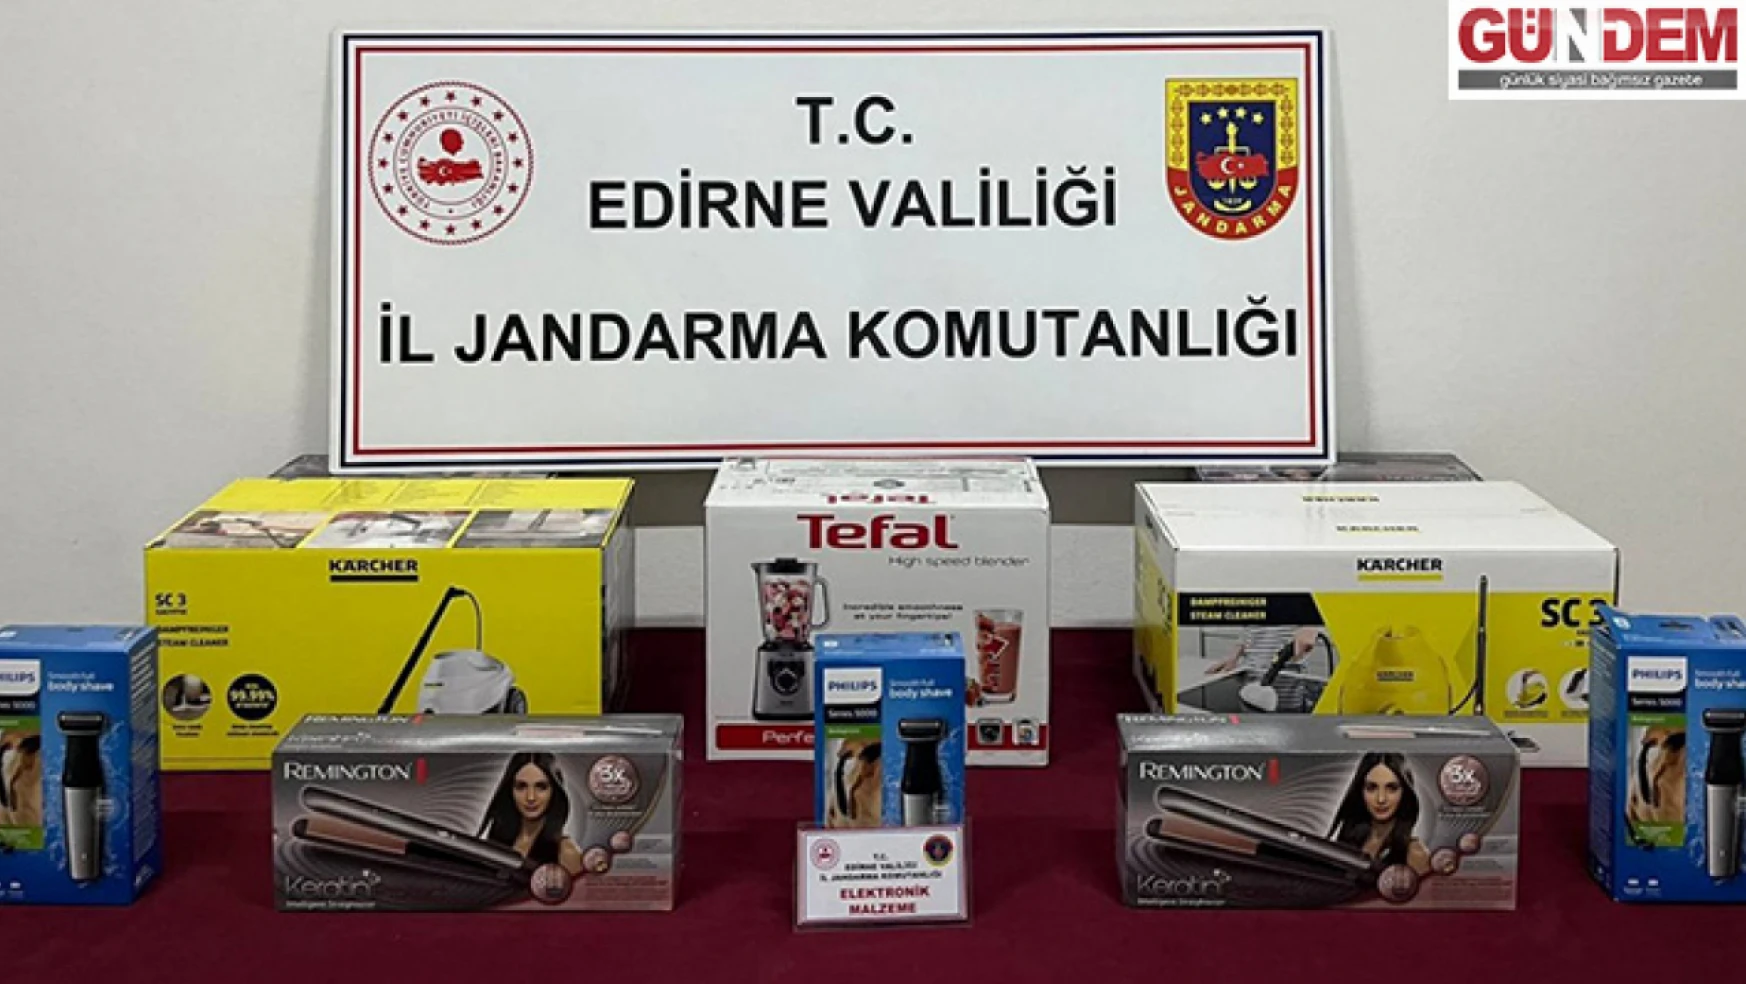 Edirne'de çok sayıda gümrük kaçağı elektronik ürün ele geçirildi